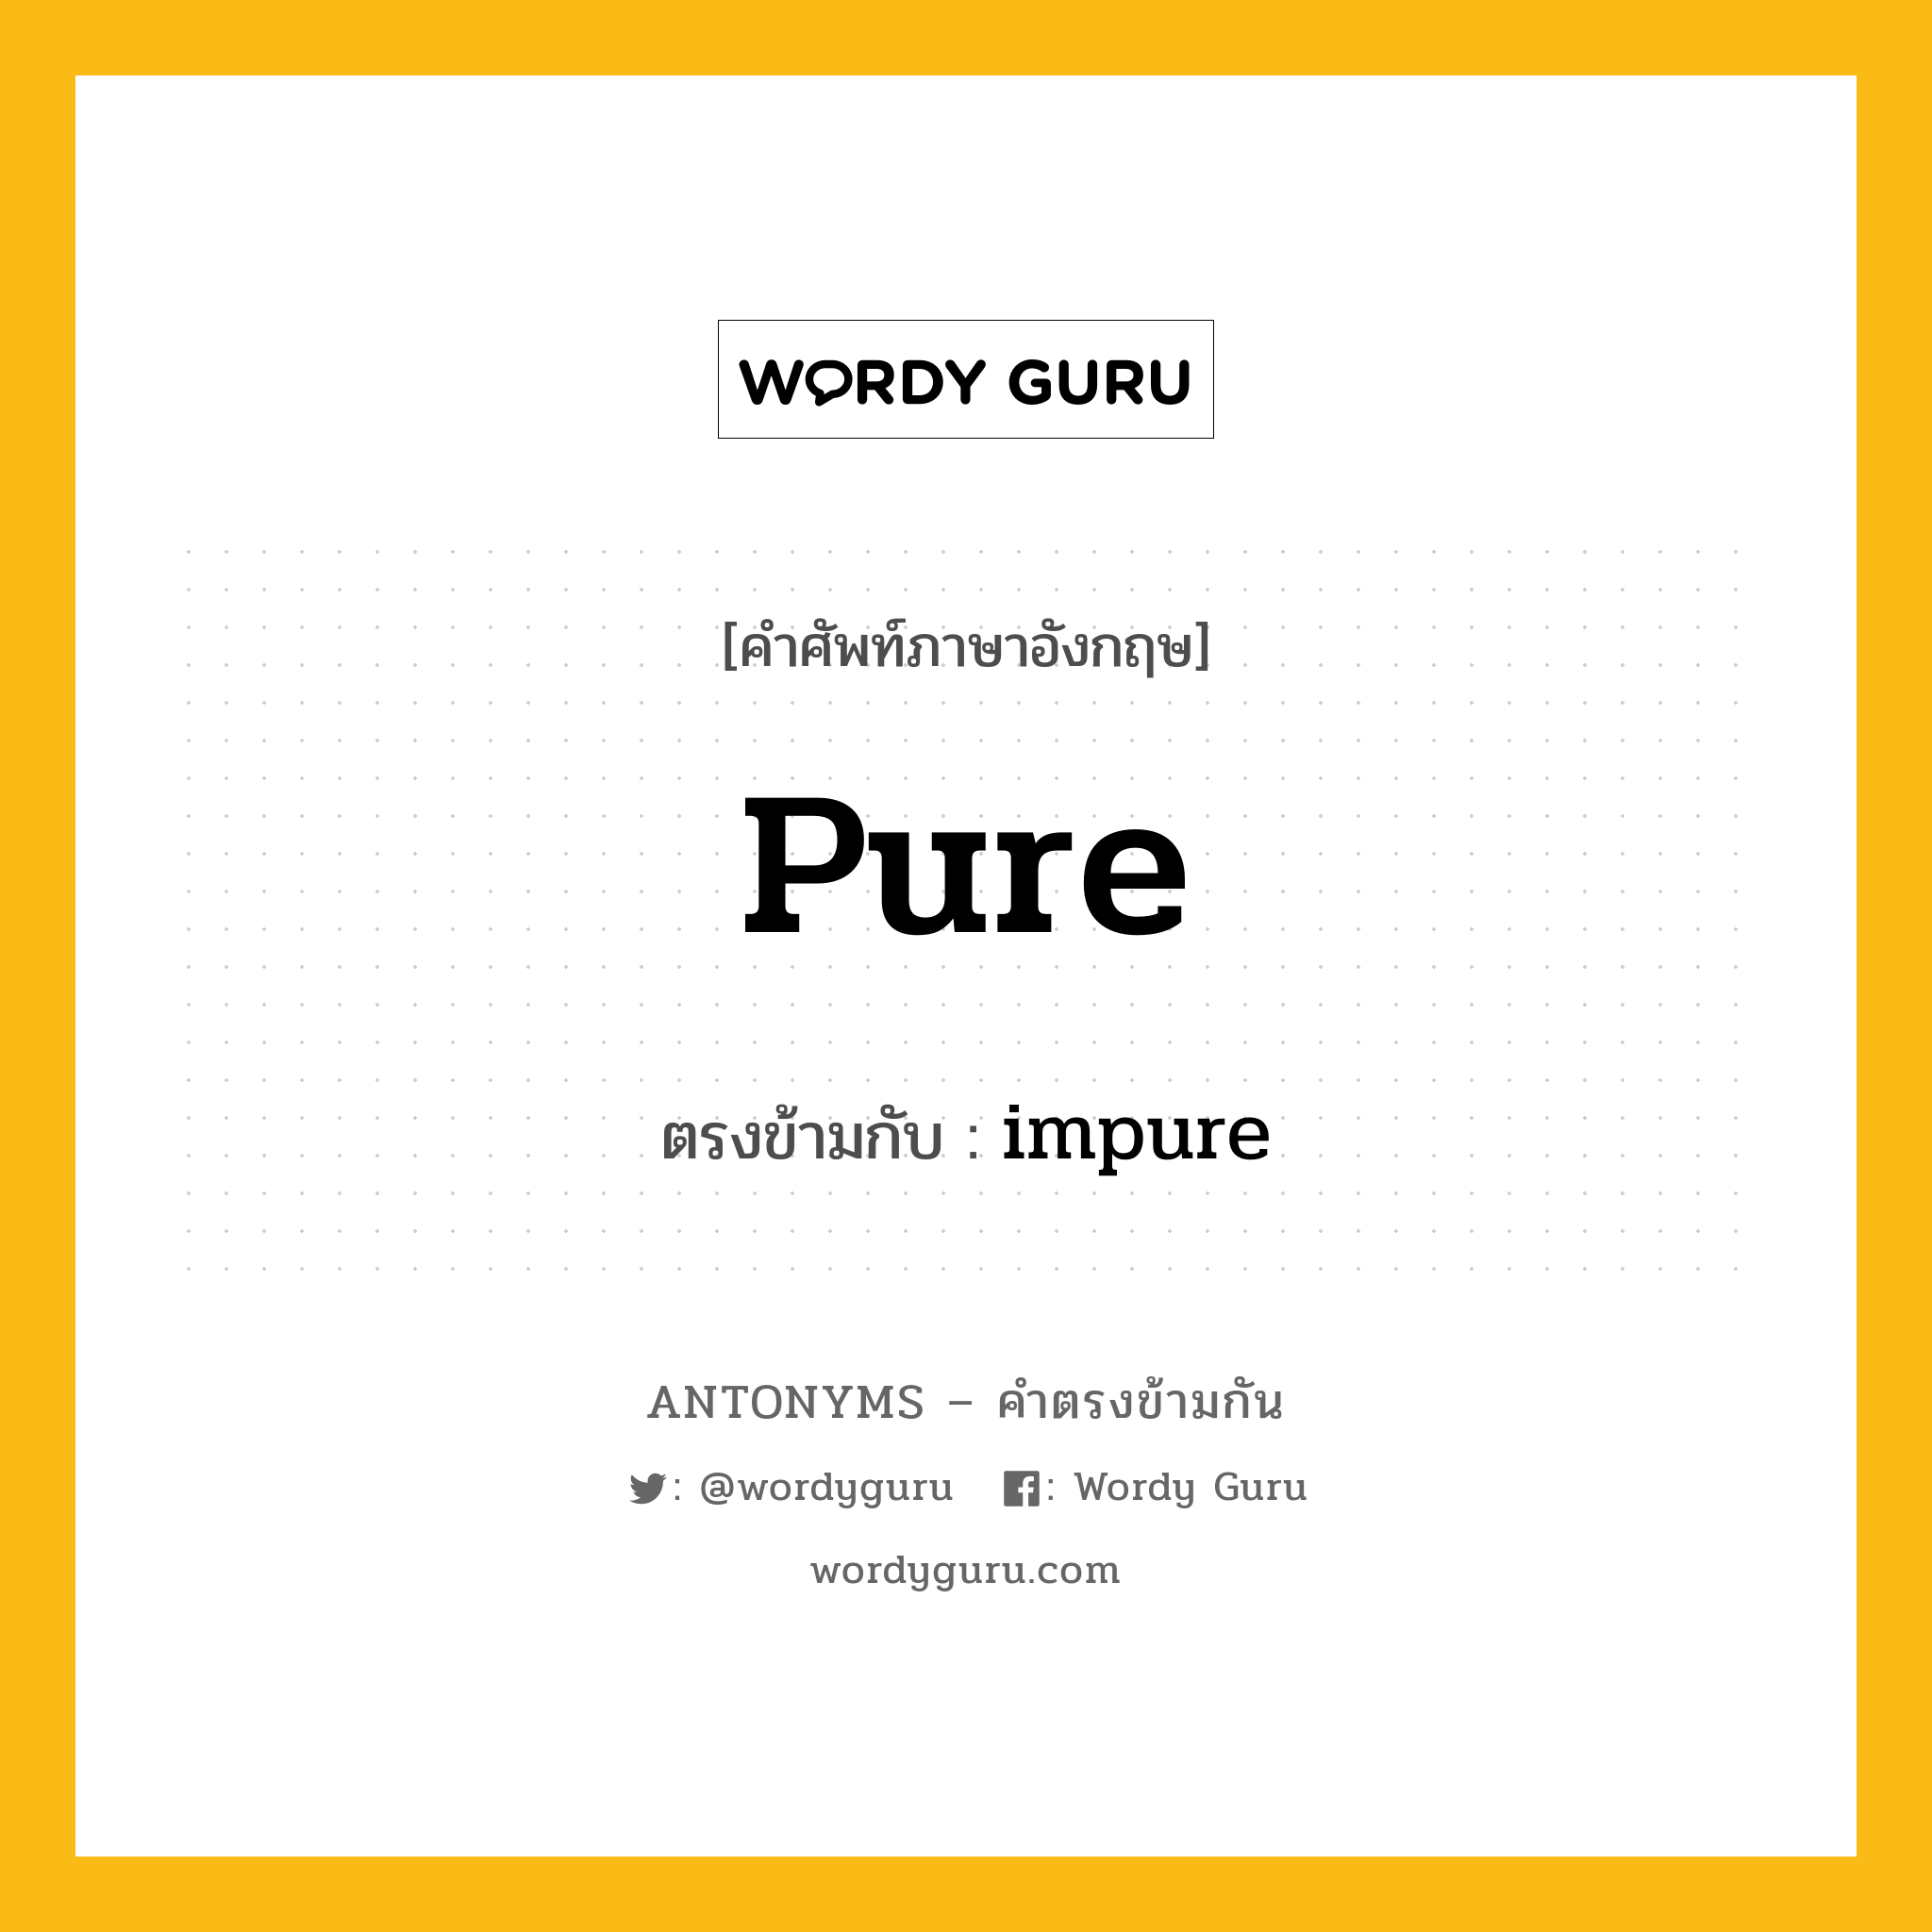 pure เป็นคำตรงข้ามกับคำไหนบ้าง?, คำศัพท์ภาษาอังกฤษ pure ตรงข้ามกับ impure หมวด impure